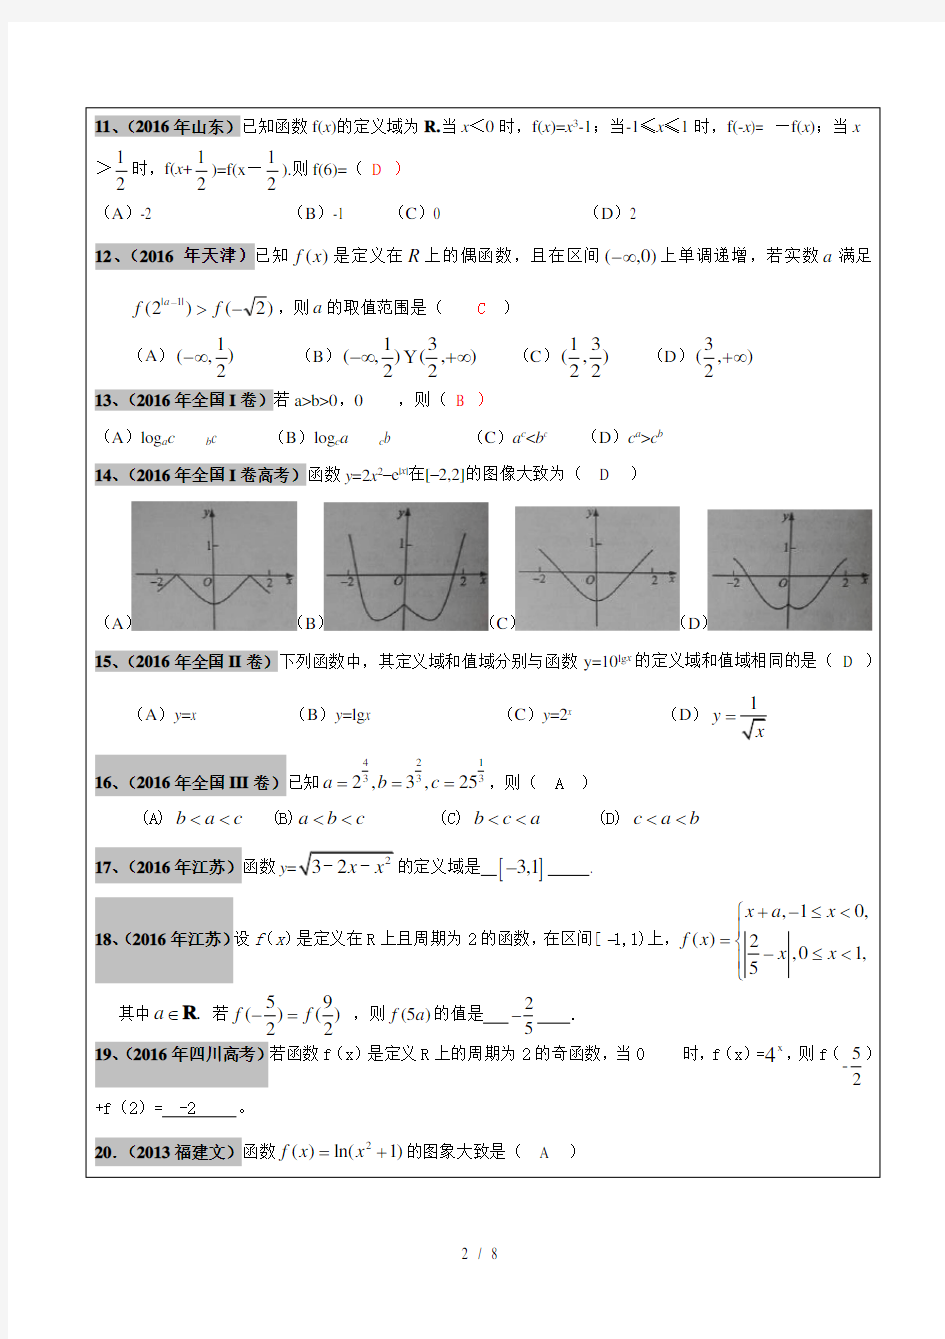 20122017年高考文科数学真题汇编基本初等函数老师版